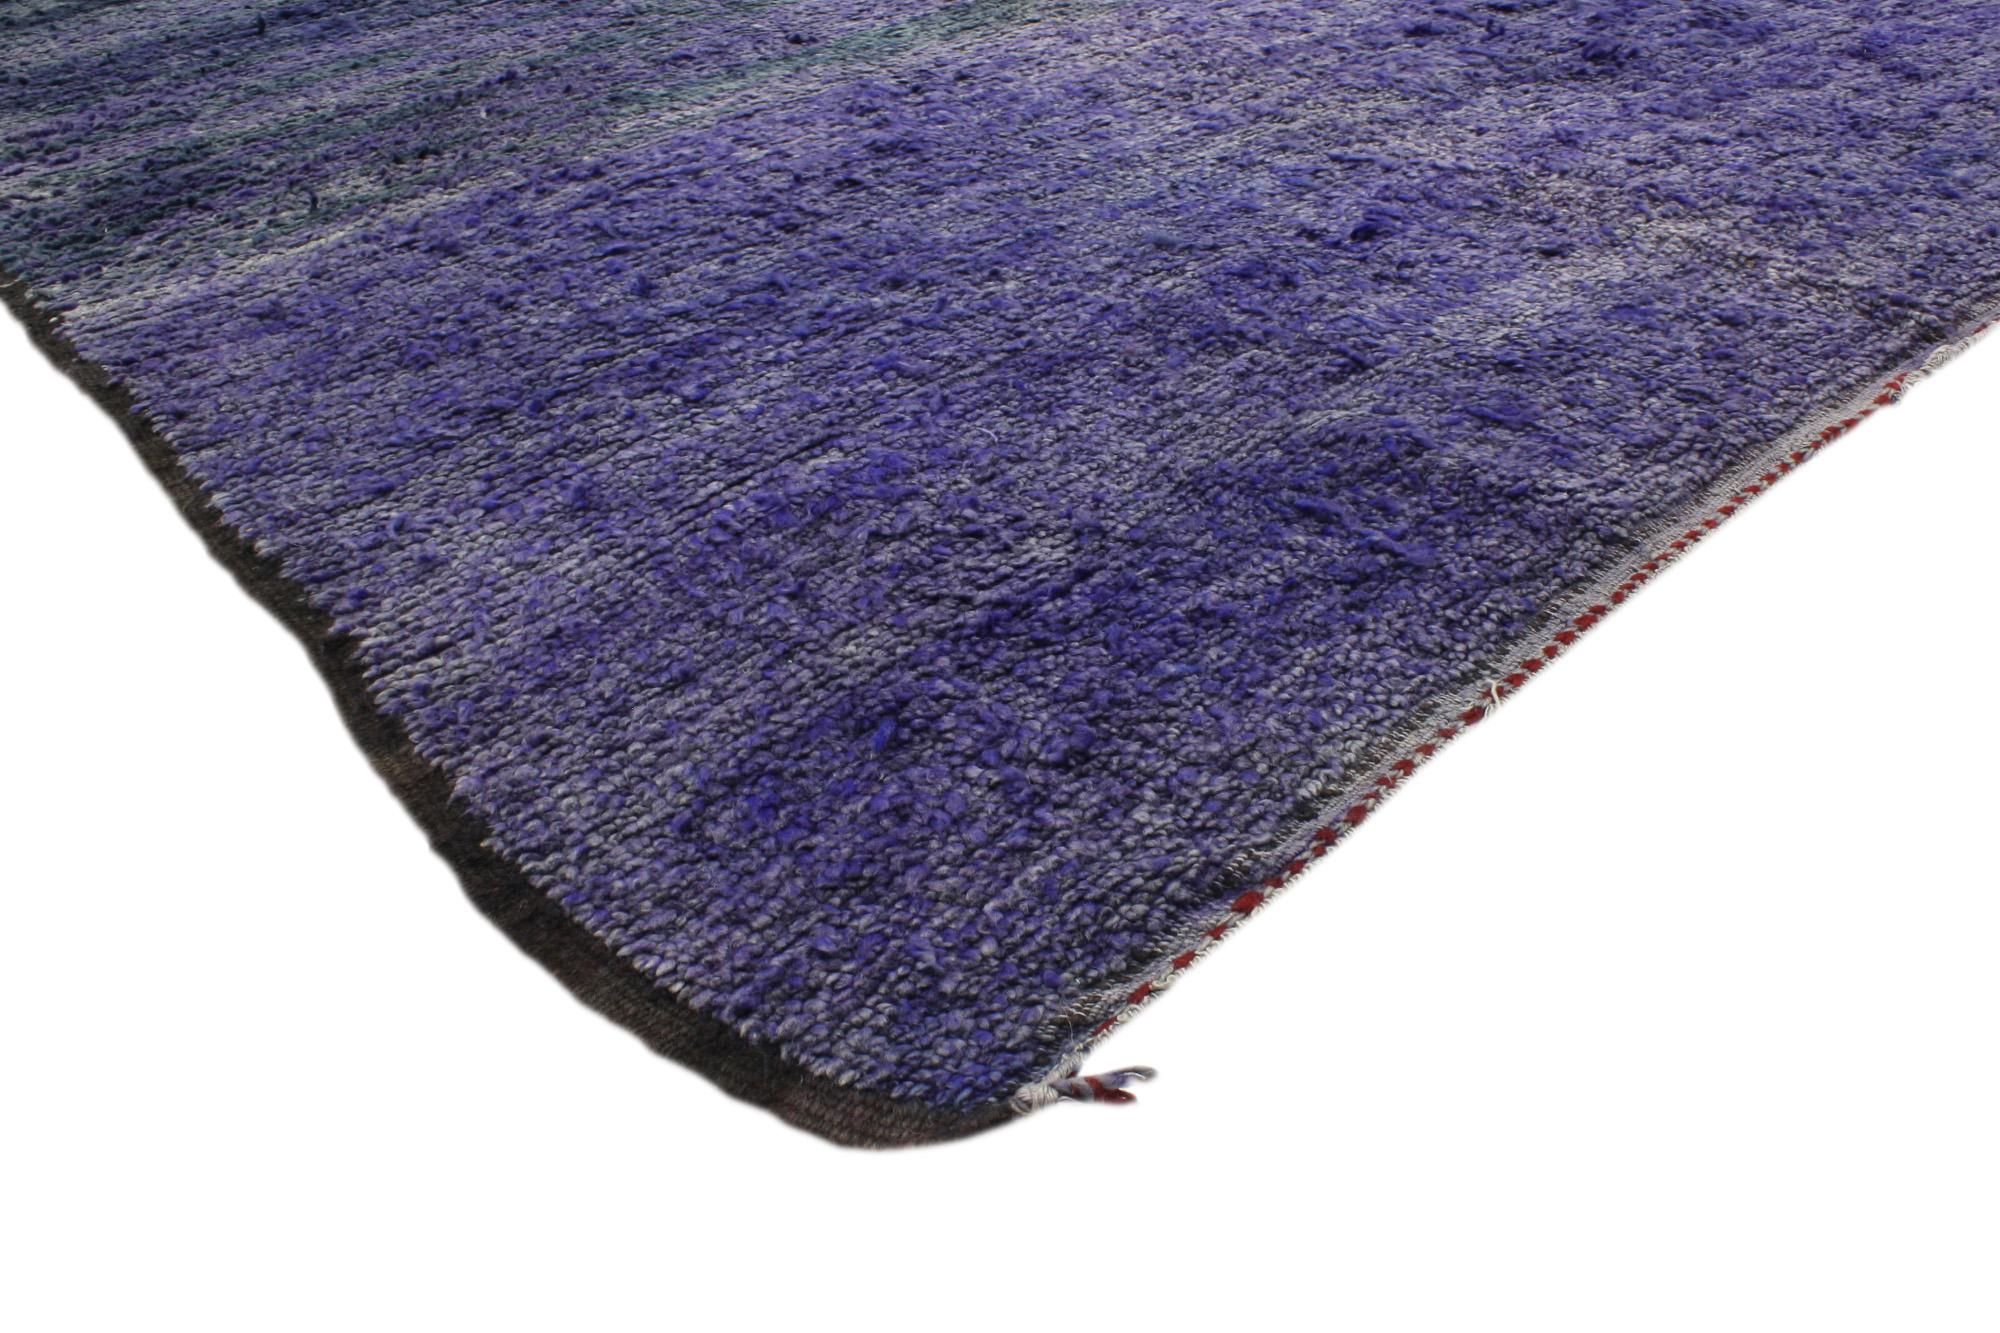 20345 Tapis marocain Beni Mrirt Vintage Purple, 07'01 x 14'00. Les tapis Beni Mrirt incarnent la tradition vénérée du tissage marocain. Ils sont réputés pour leur texture somptueuse, leurs motifs géométriques et leurs tons de terre paisibles.